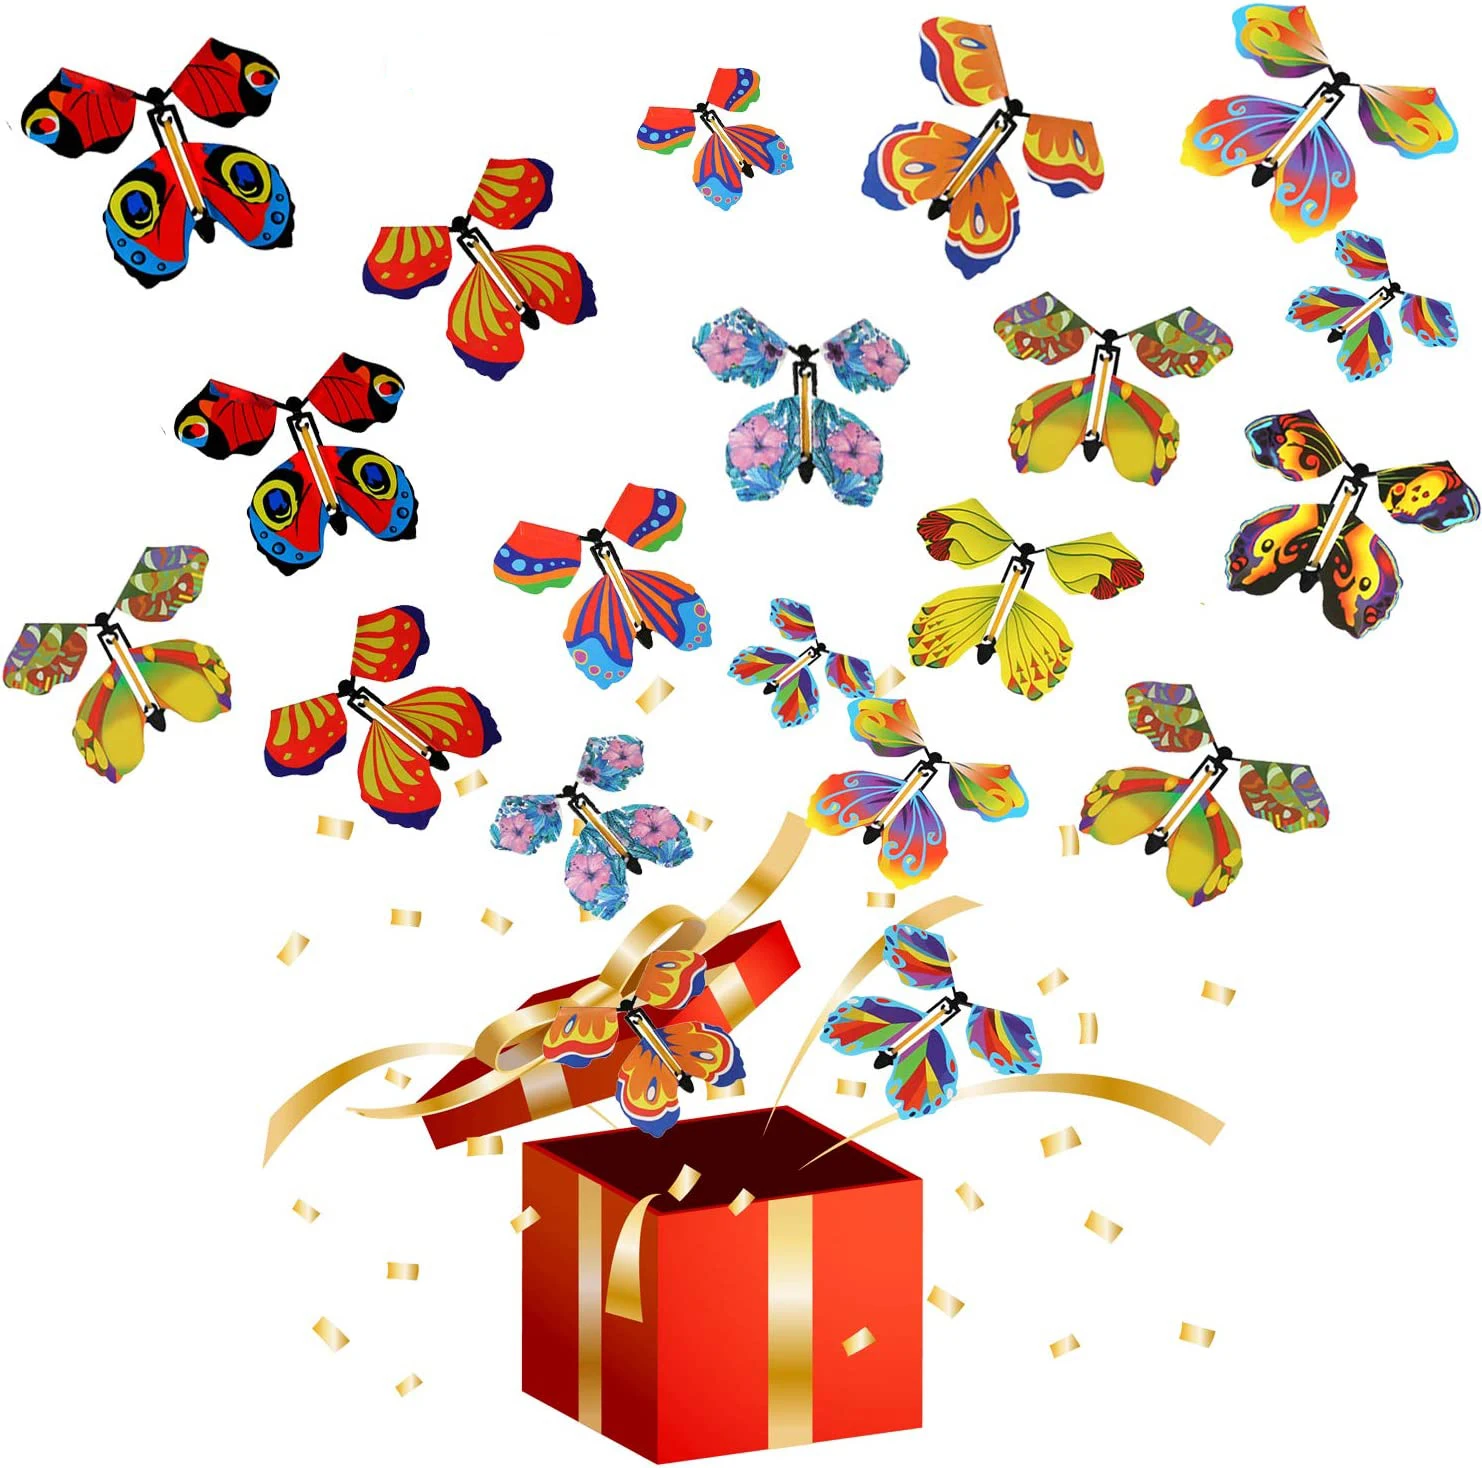 Magic Flying Butterfly Fairy Flying Toy avvolgimento elastico farfalla elettrica giocattolo colore segnalibro regalo decorazione regalo